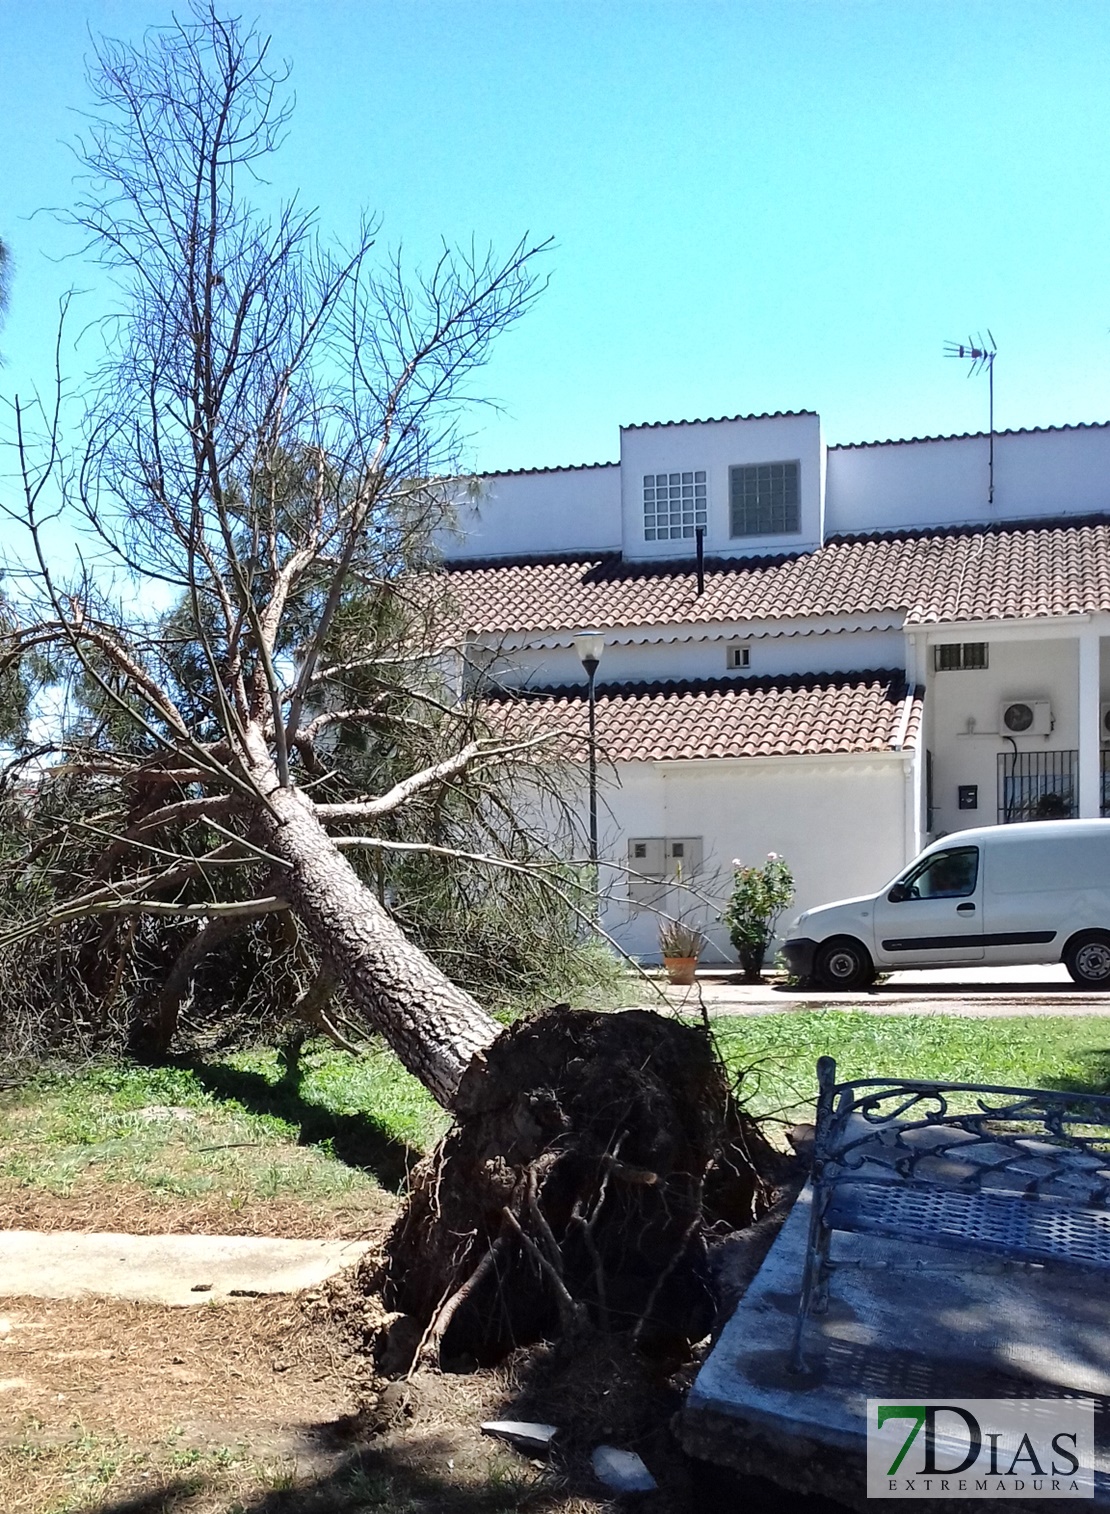 Cae un árbol de grandes dimensiones cerca de unas viviendas de Villafranco